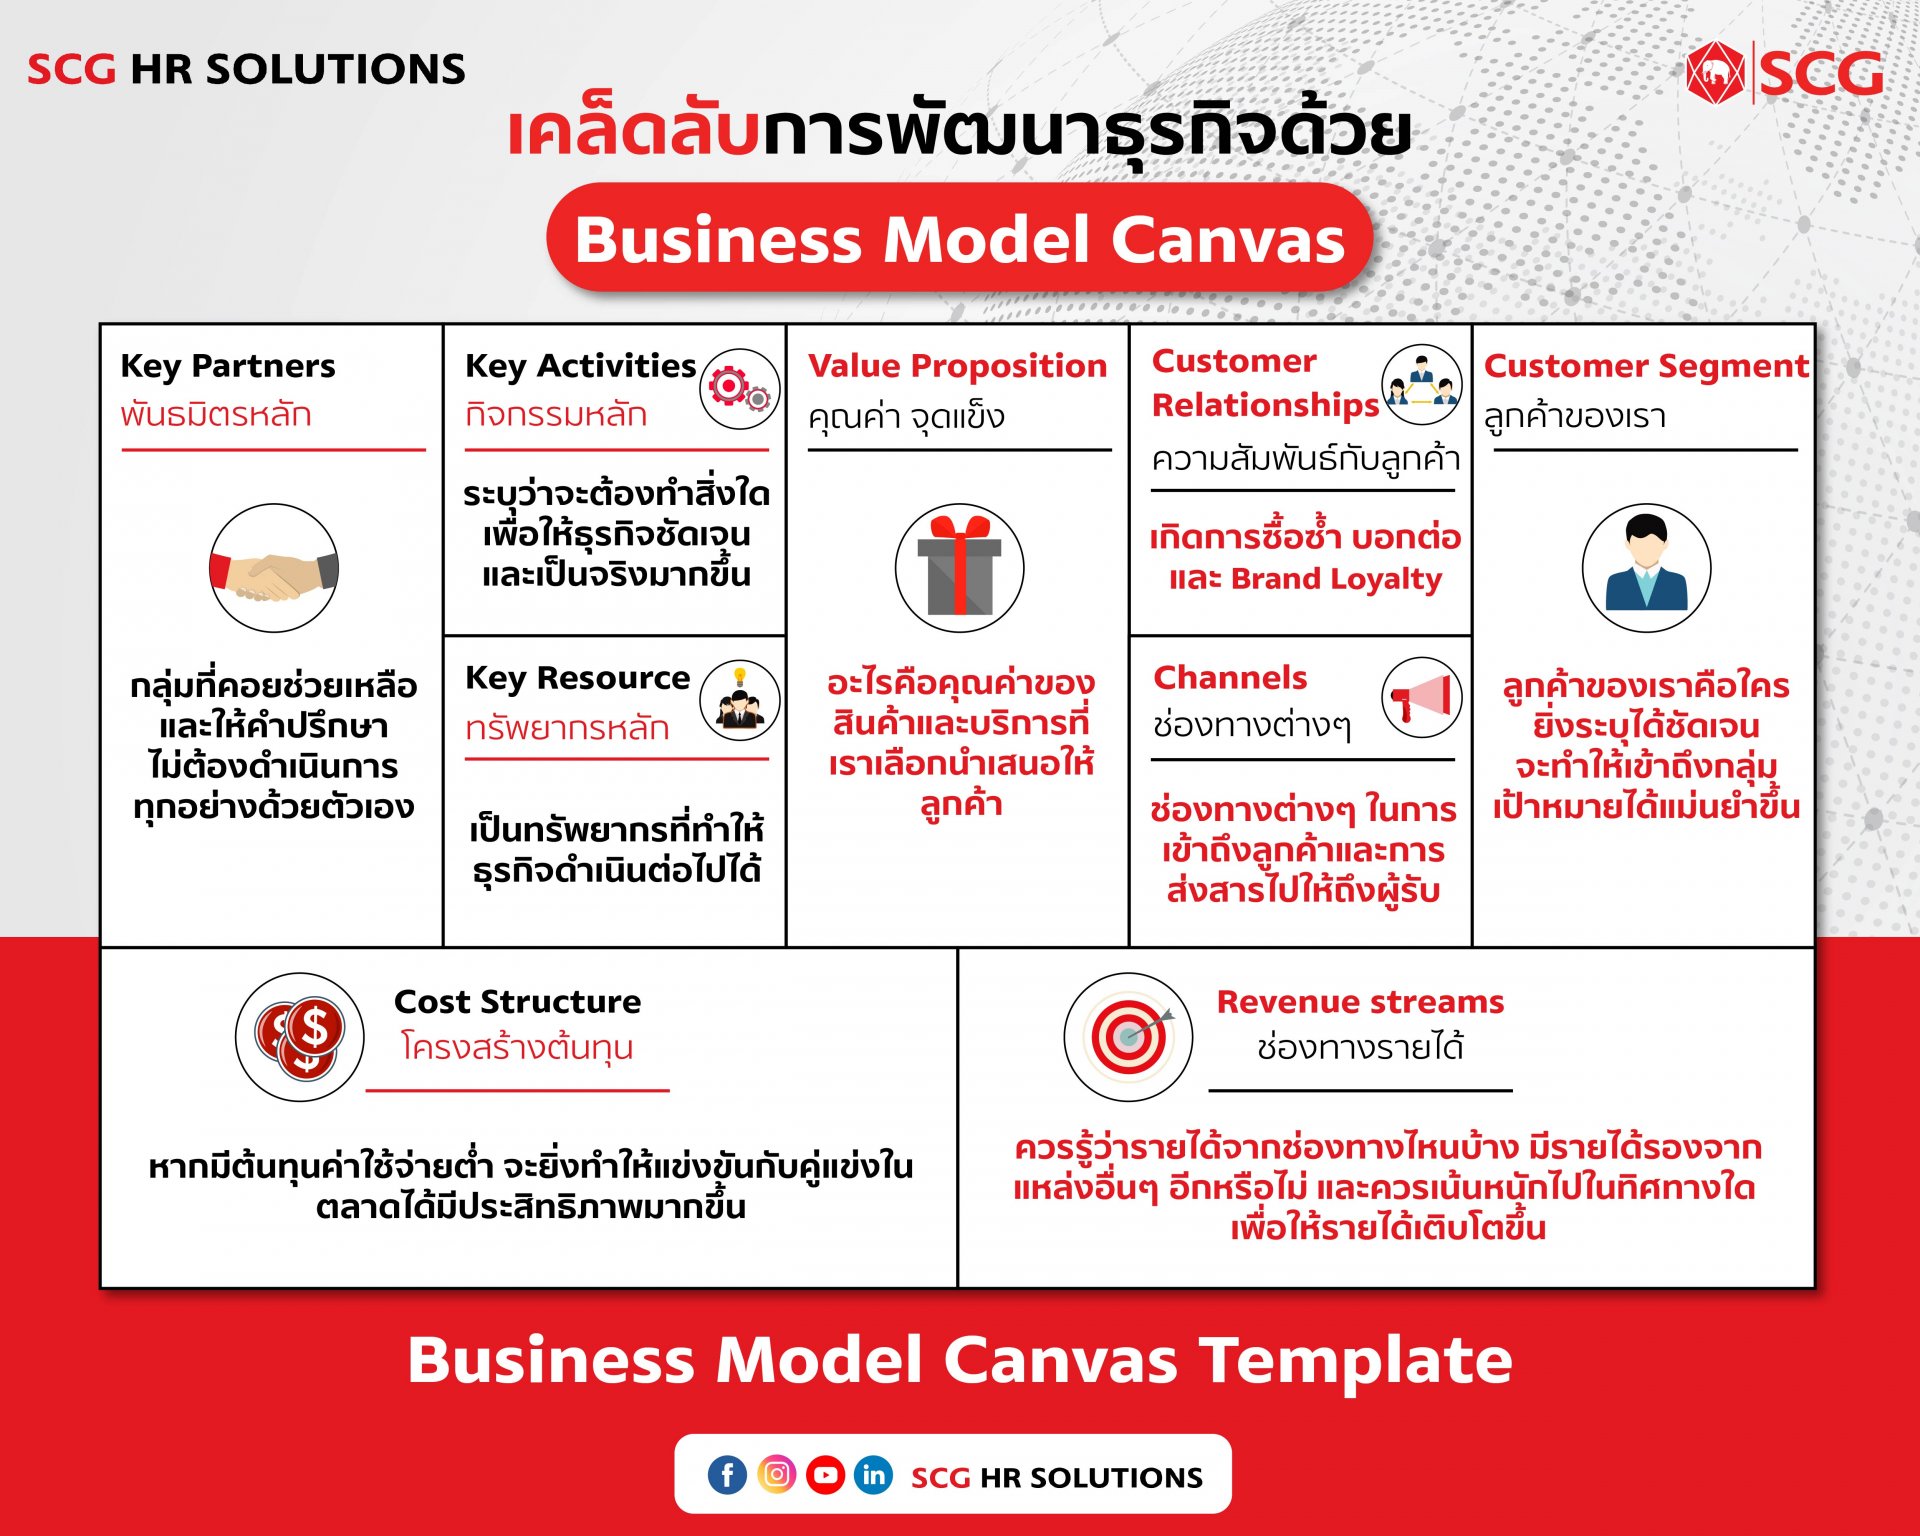 เคล็ดลับการพัฒนาธุรกิจด้วย Business Model Canvas 